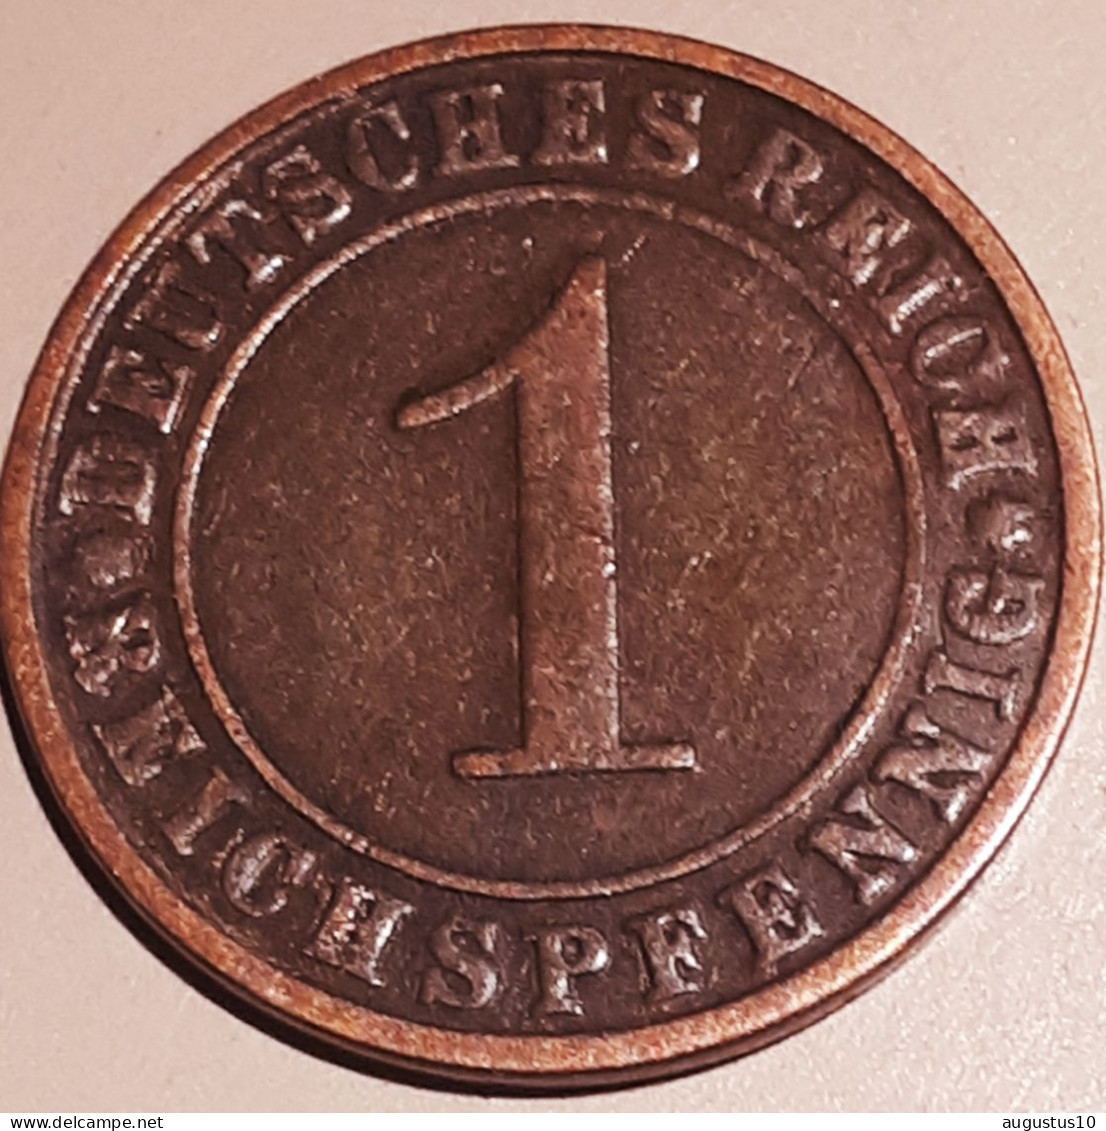 DUITSLAND : 1 REICHSPFENNIG 1925 J KM 37 XF - 1 Renten- & 1 Reichspfennig